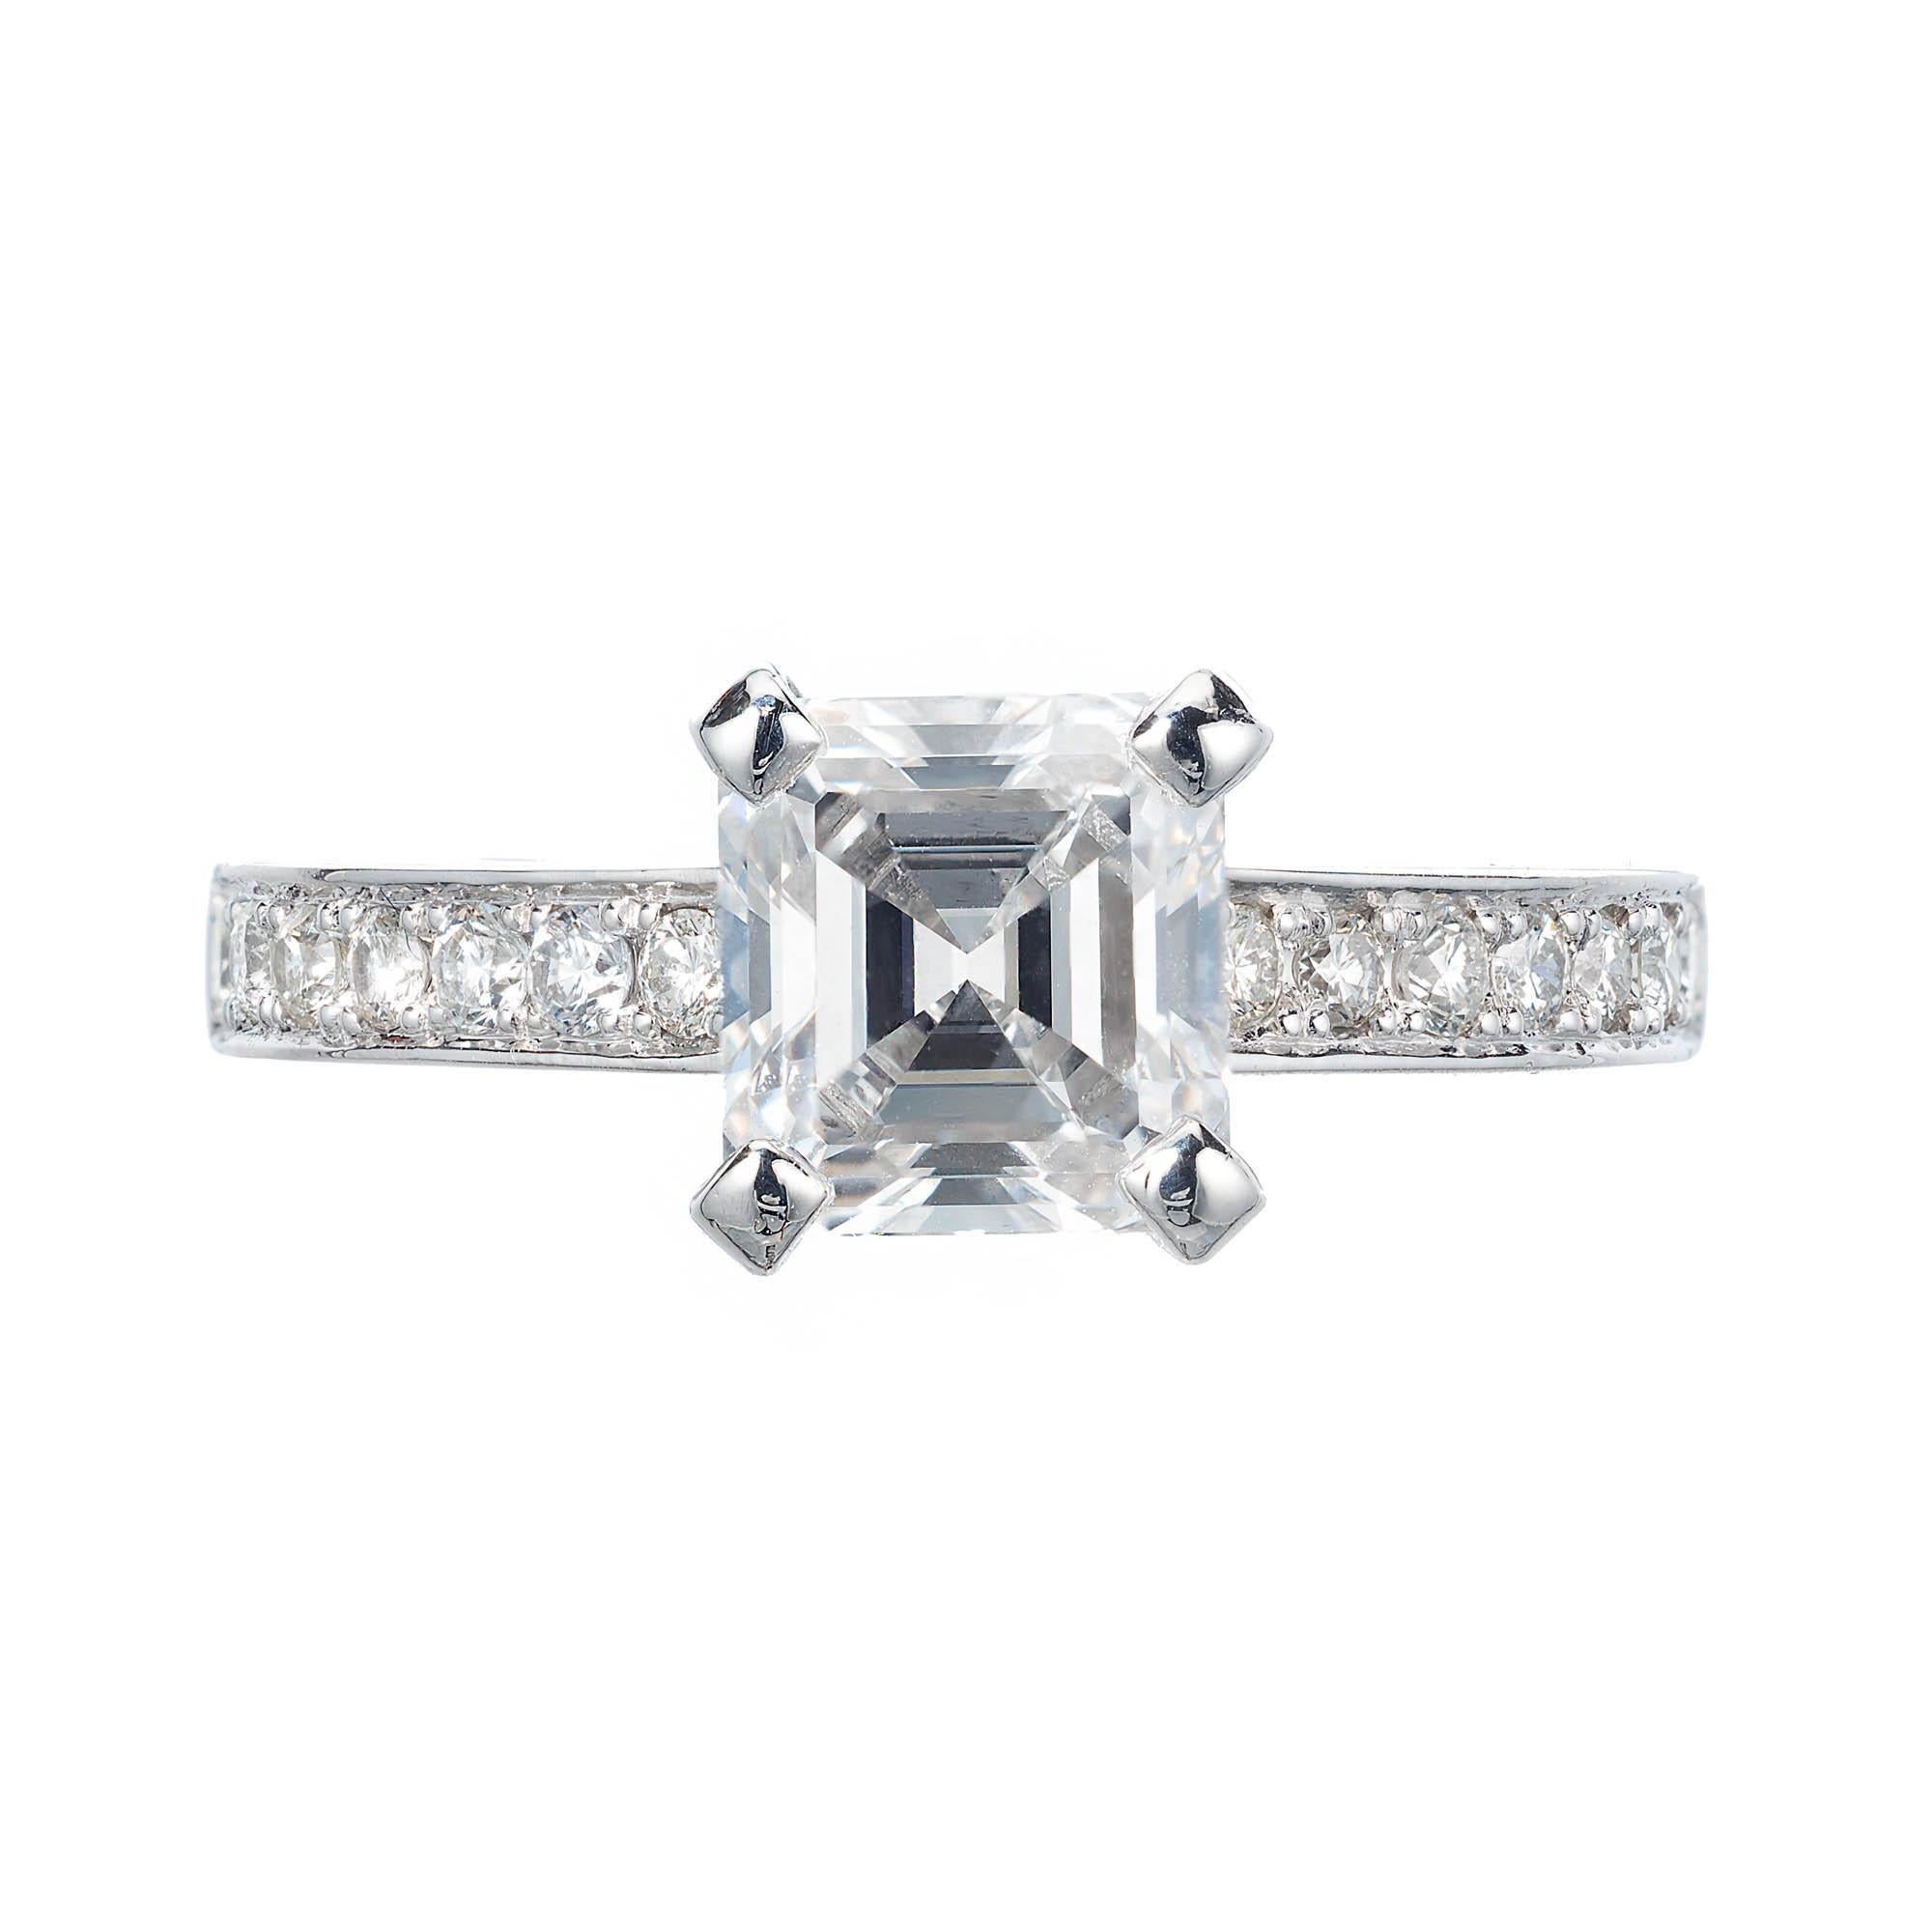 Verlobungsring aus Platin mit GIA-zertifiziertem 1,83 Karat Diamant von Peter Suchy